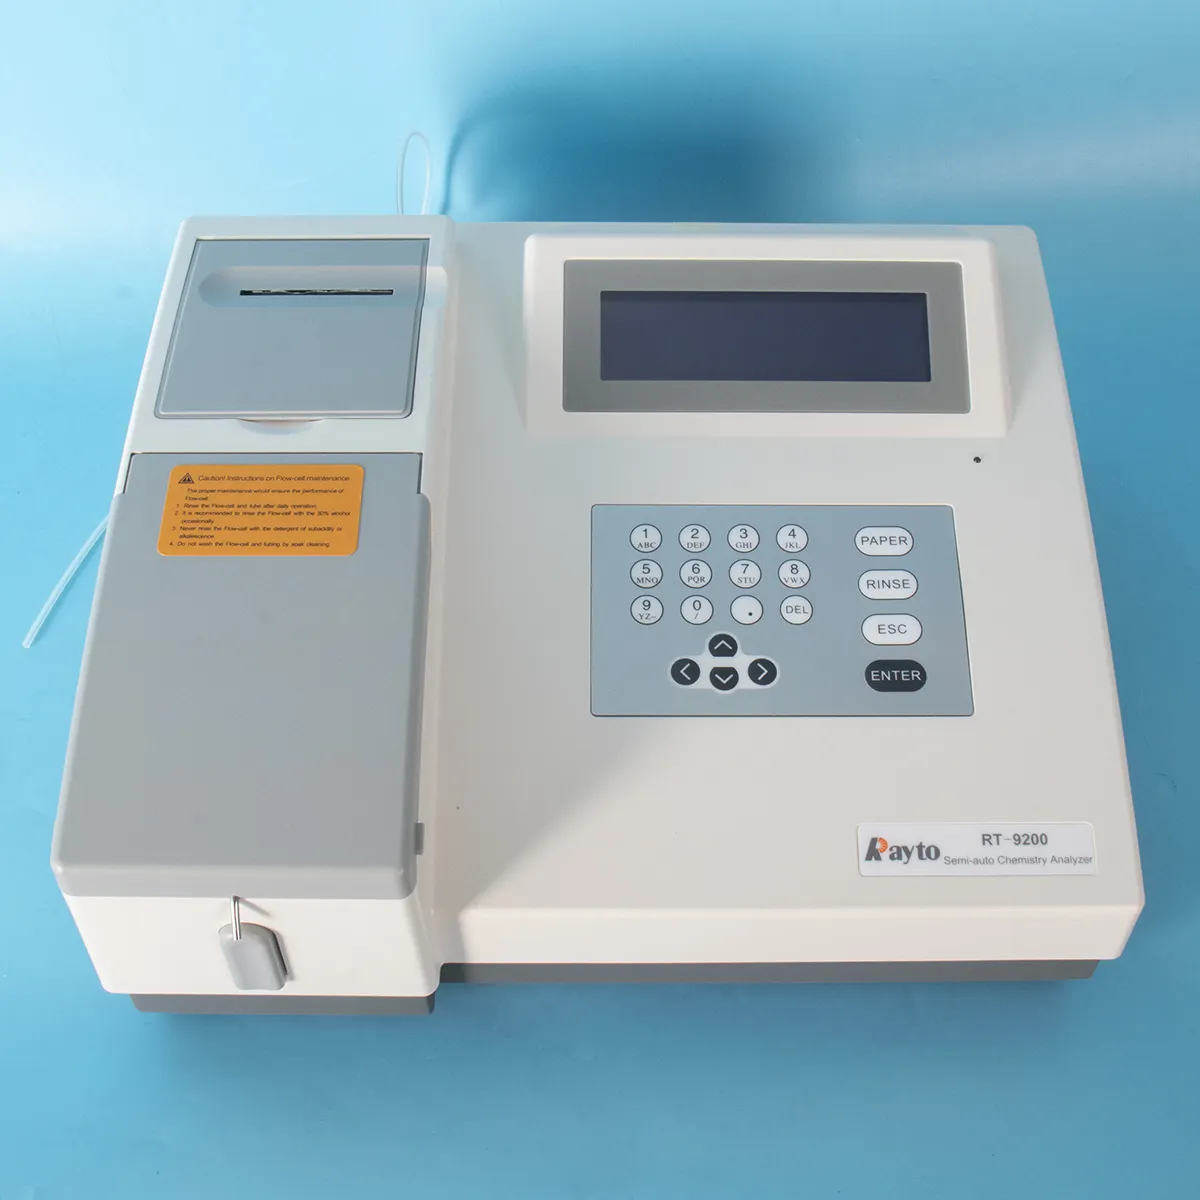 Rayto RT-9200ラボ用半自動生化学化学分析装置